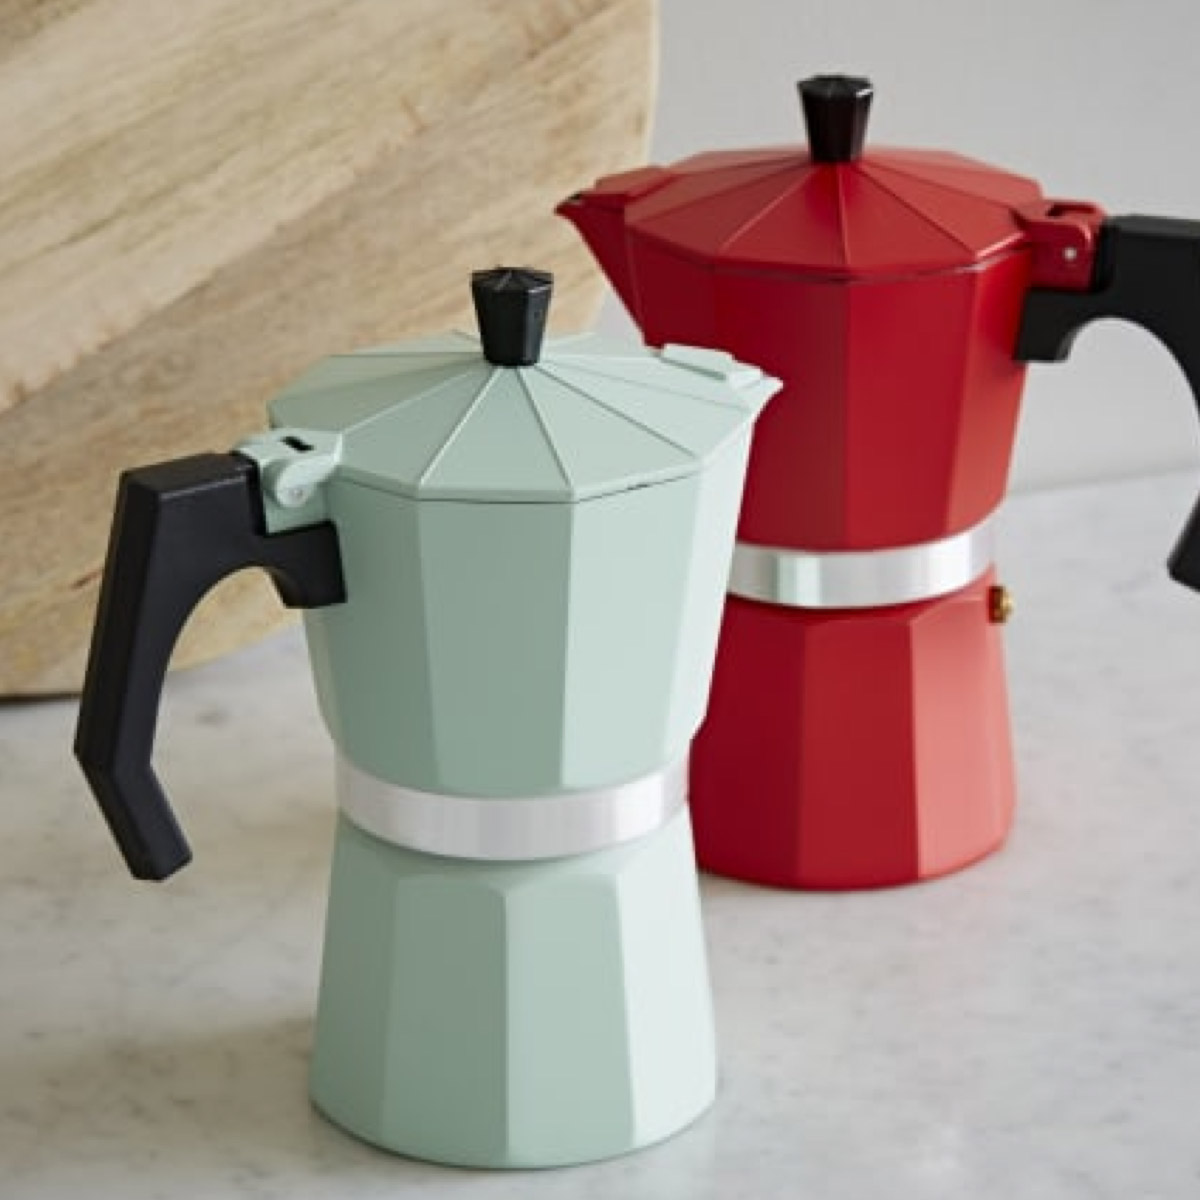 Colourful Stovetop Espresso Maker